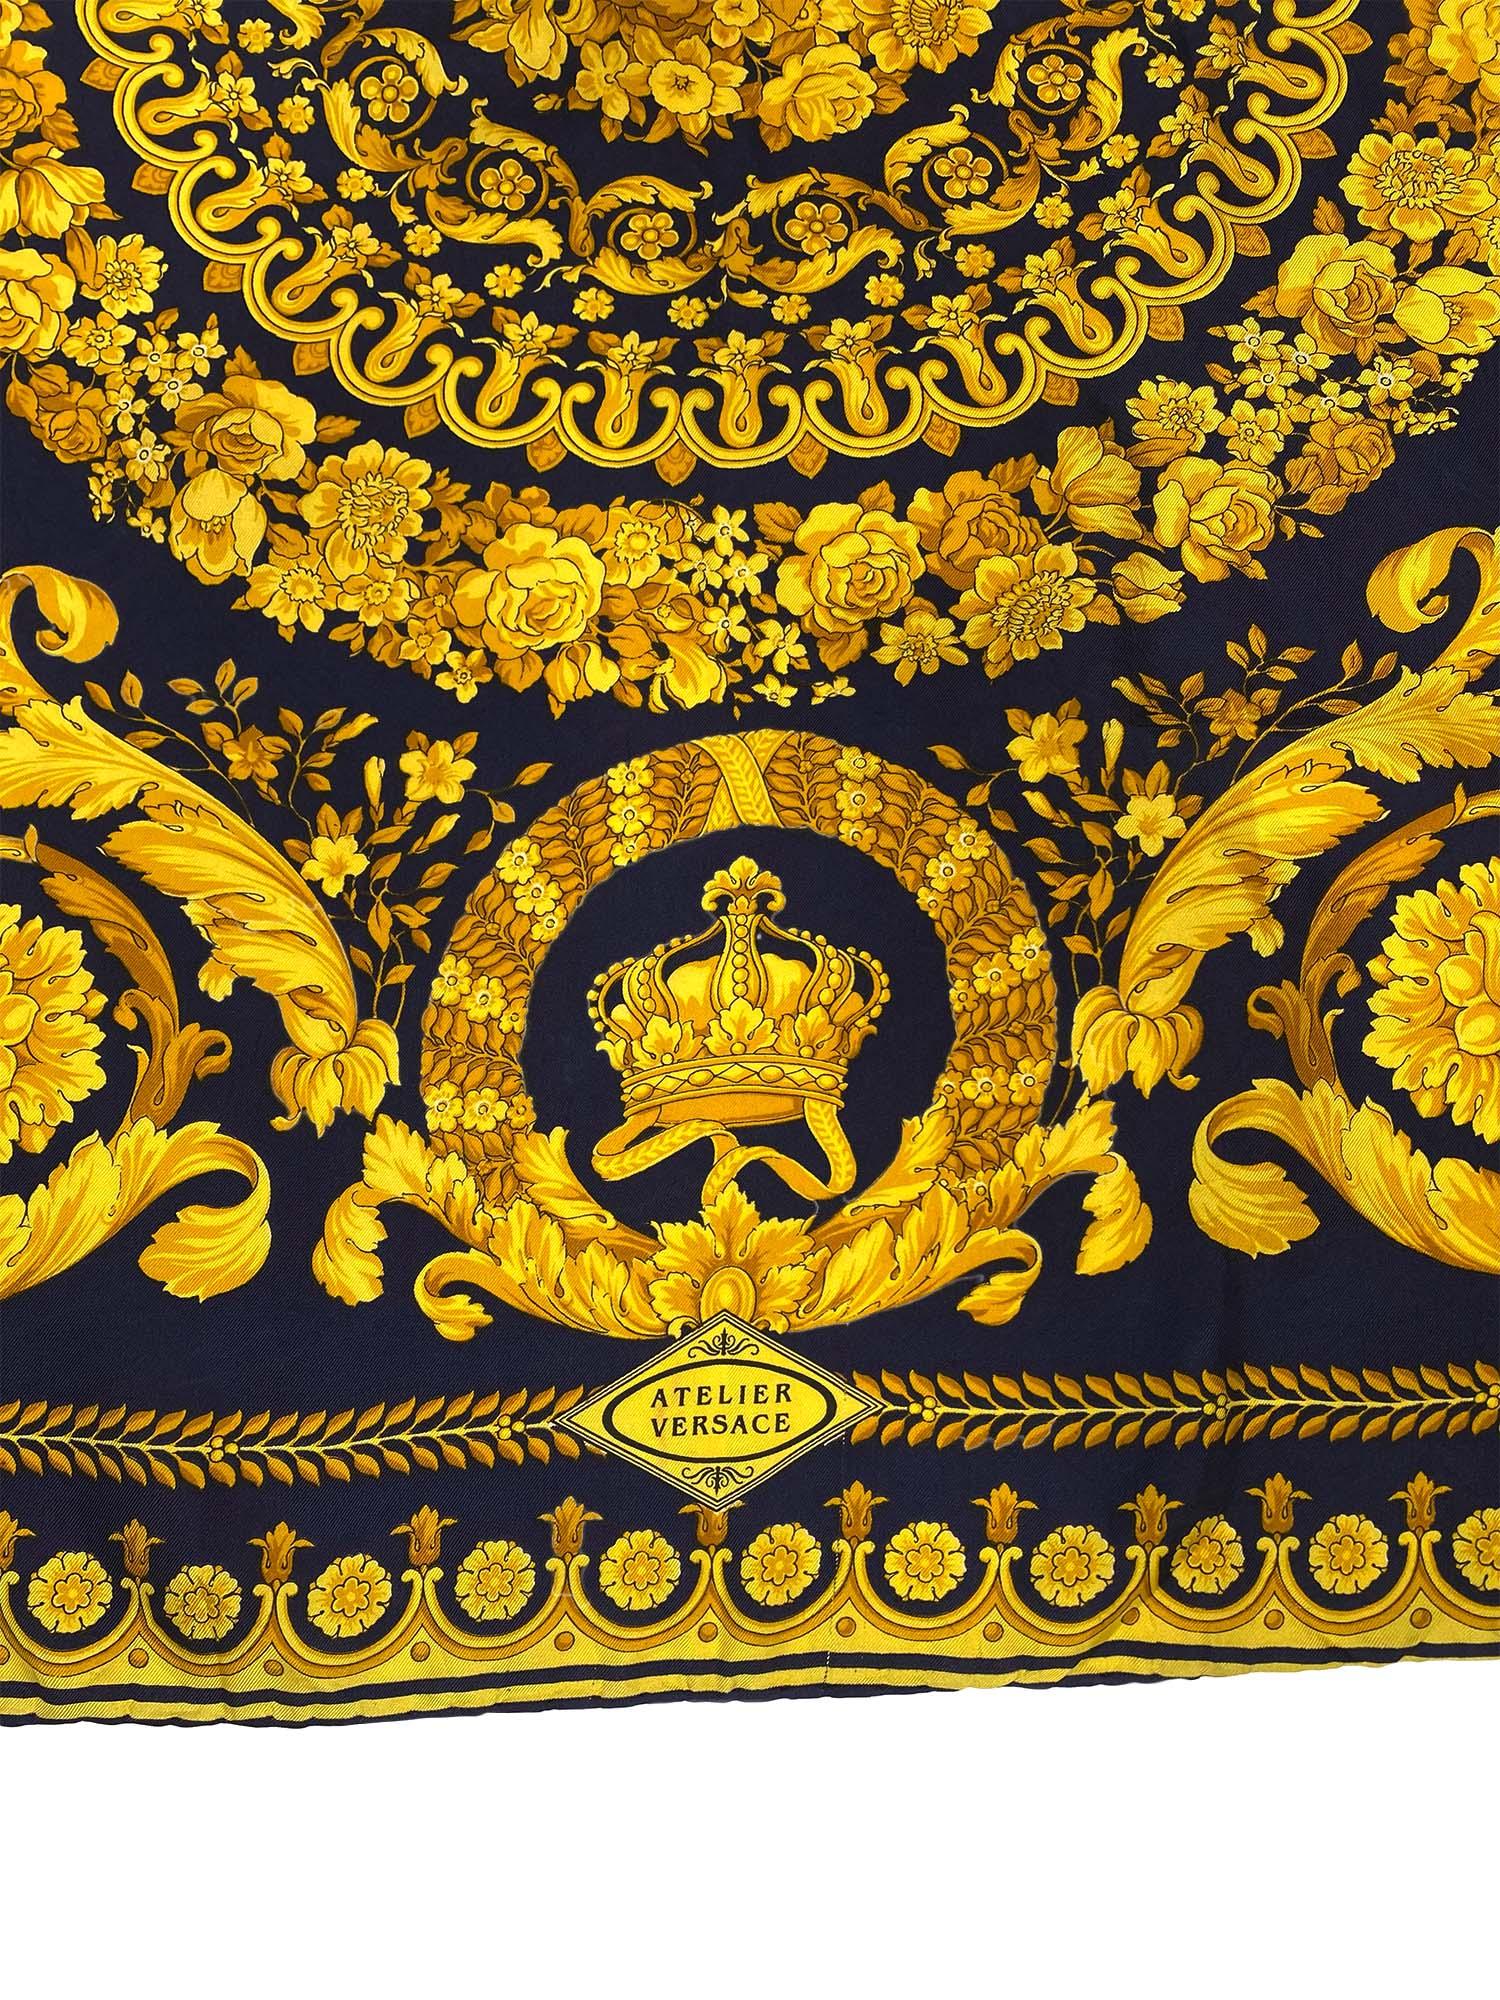 Voici un magnifique foulard carré en soie baroque Atelier Versace, conçu par Gianni Versace. Cette écharpe présente un motif baroque floral doré classique de Versace sur un fond marine avec des couronnes et un logo Atelier Versace.